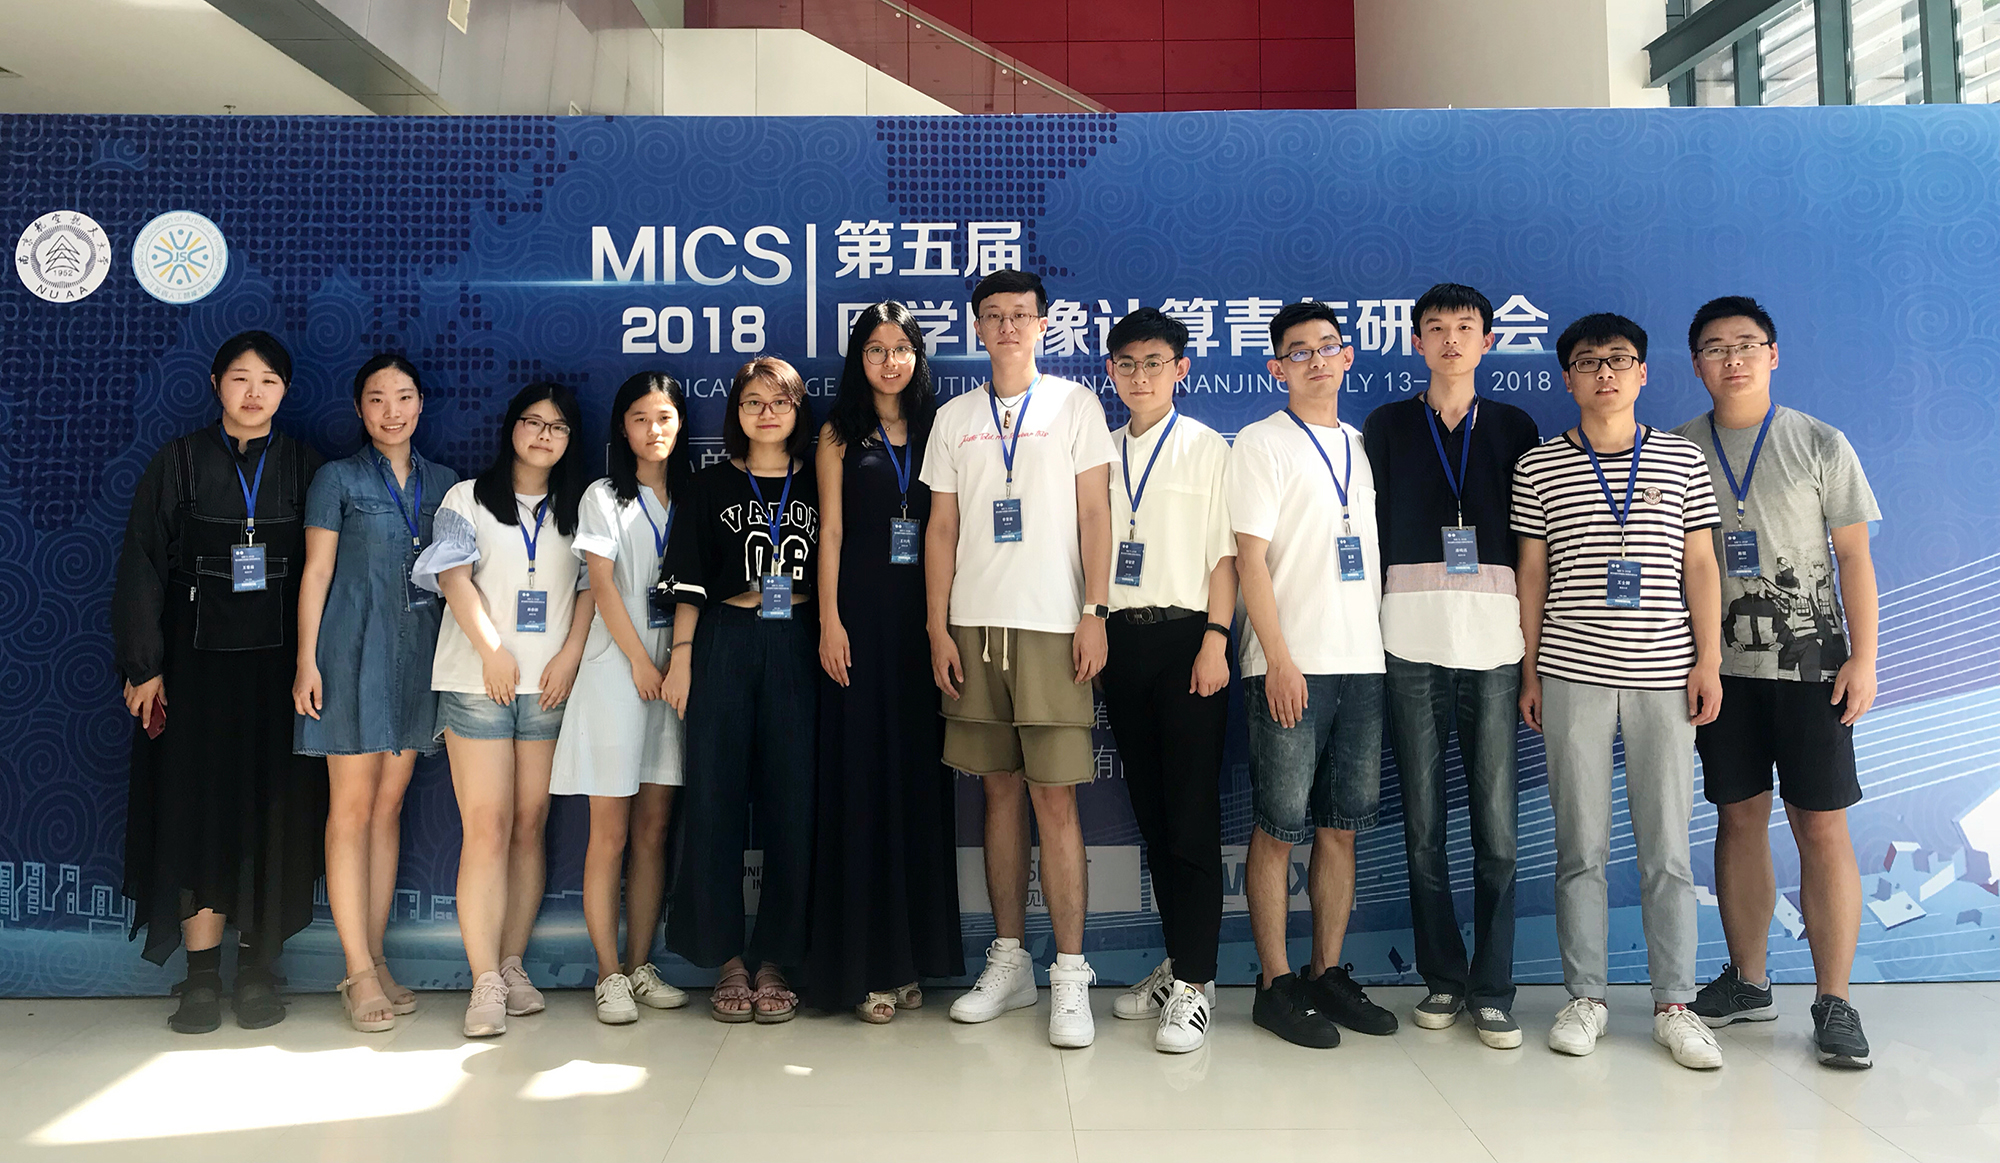 实验室学生前往南京参加第五届医学图像计算青年研讨会(MICS 2018)